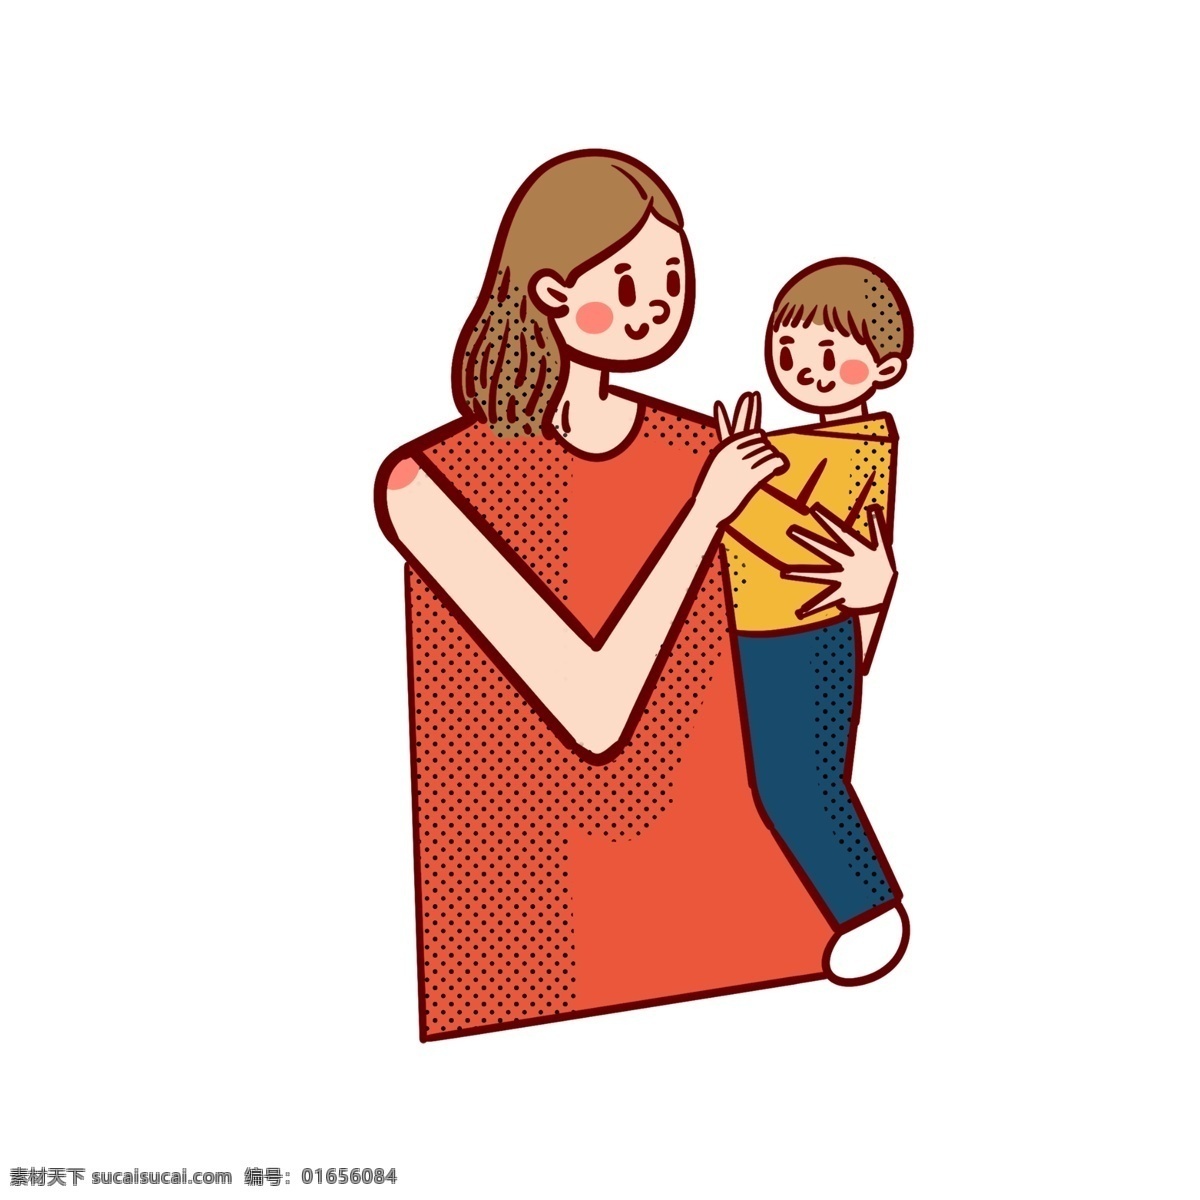 卡通 矢量 免 抠 可爱 母亲节 抱 婴儿 妈妈 免抠 小孩子 儿童 童年 快乐 开心 玩耍 宝宝 红色 上衣 短发